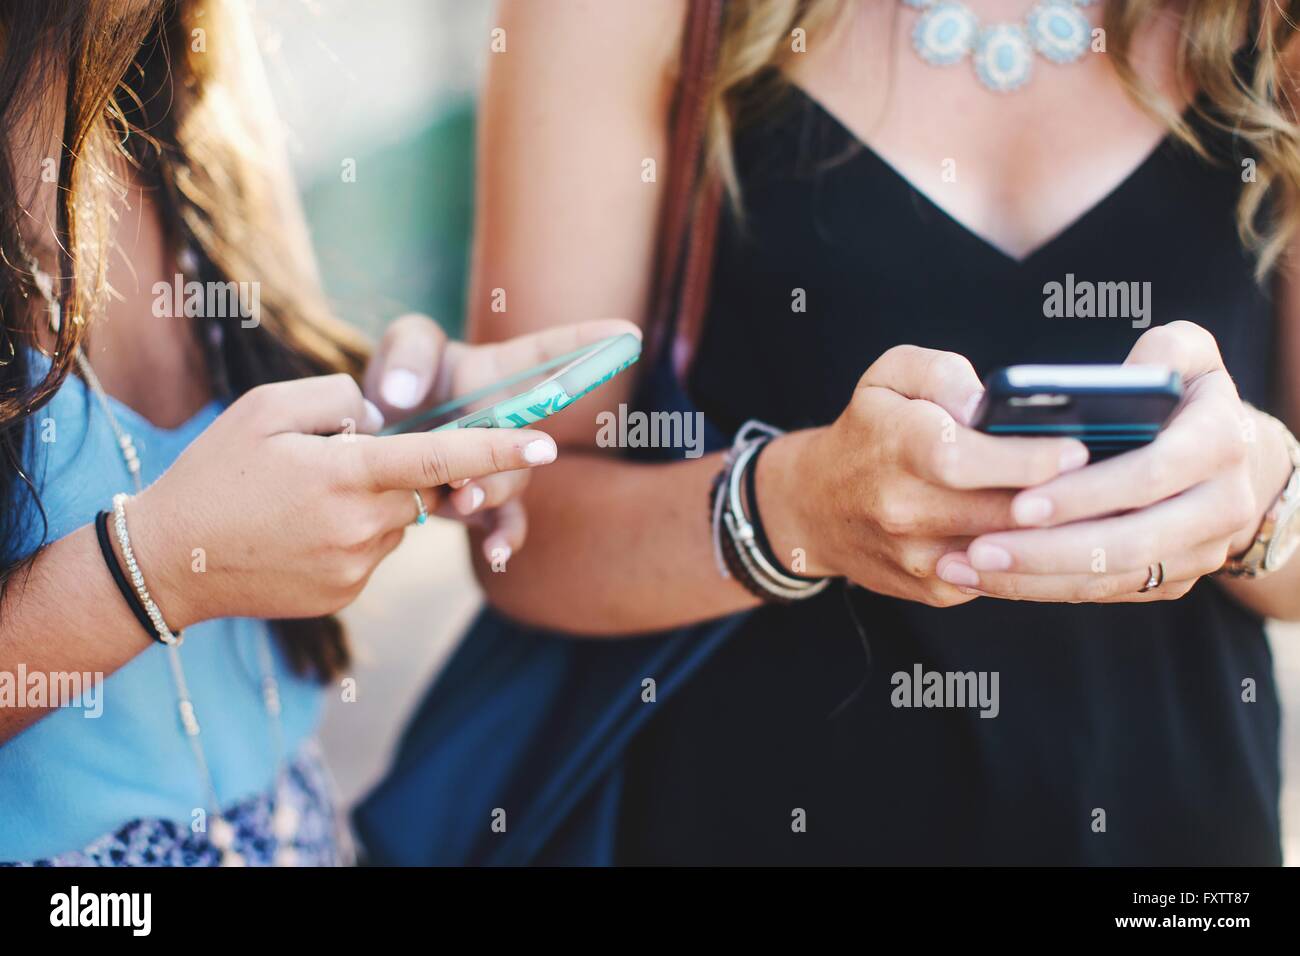 Portrait de womens milieu articles texting on smartphone Banque D'Images